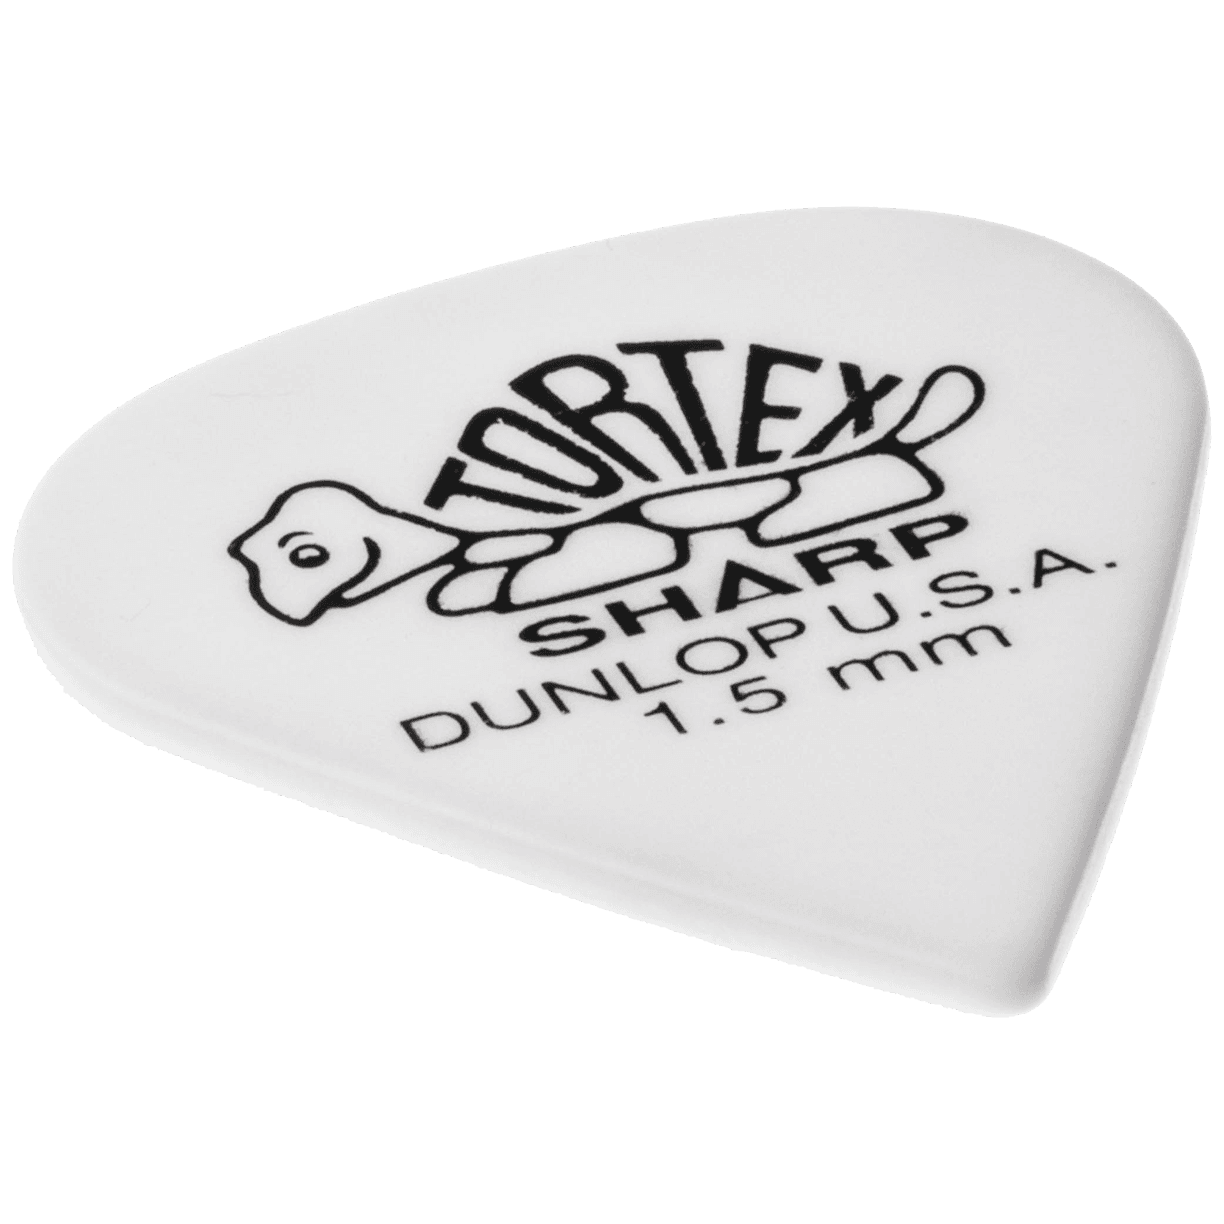 Dunlop Tortex Sharp 1,50 Player's Pack 12 Stück 2